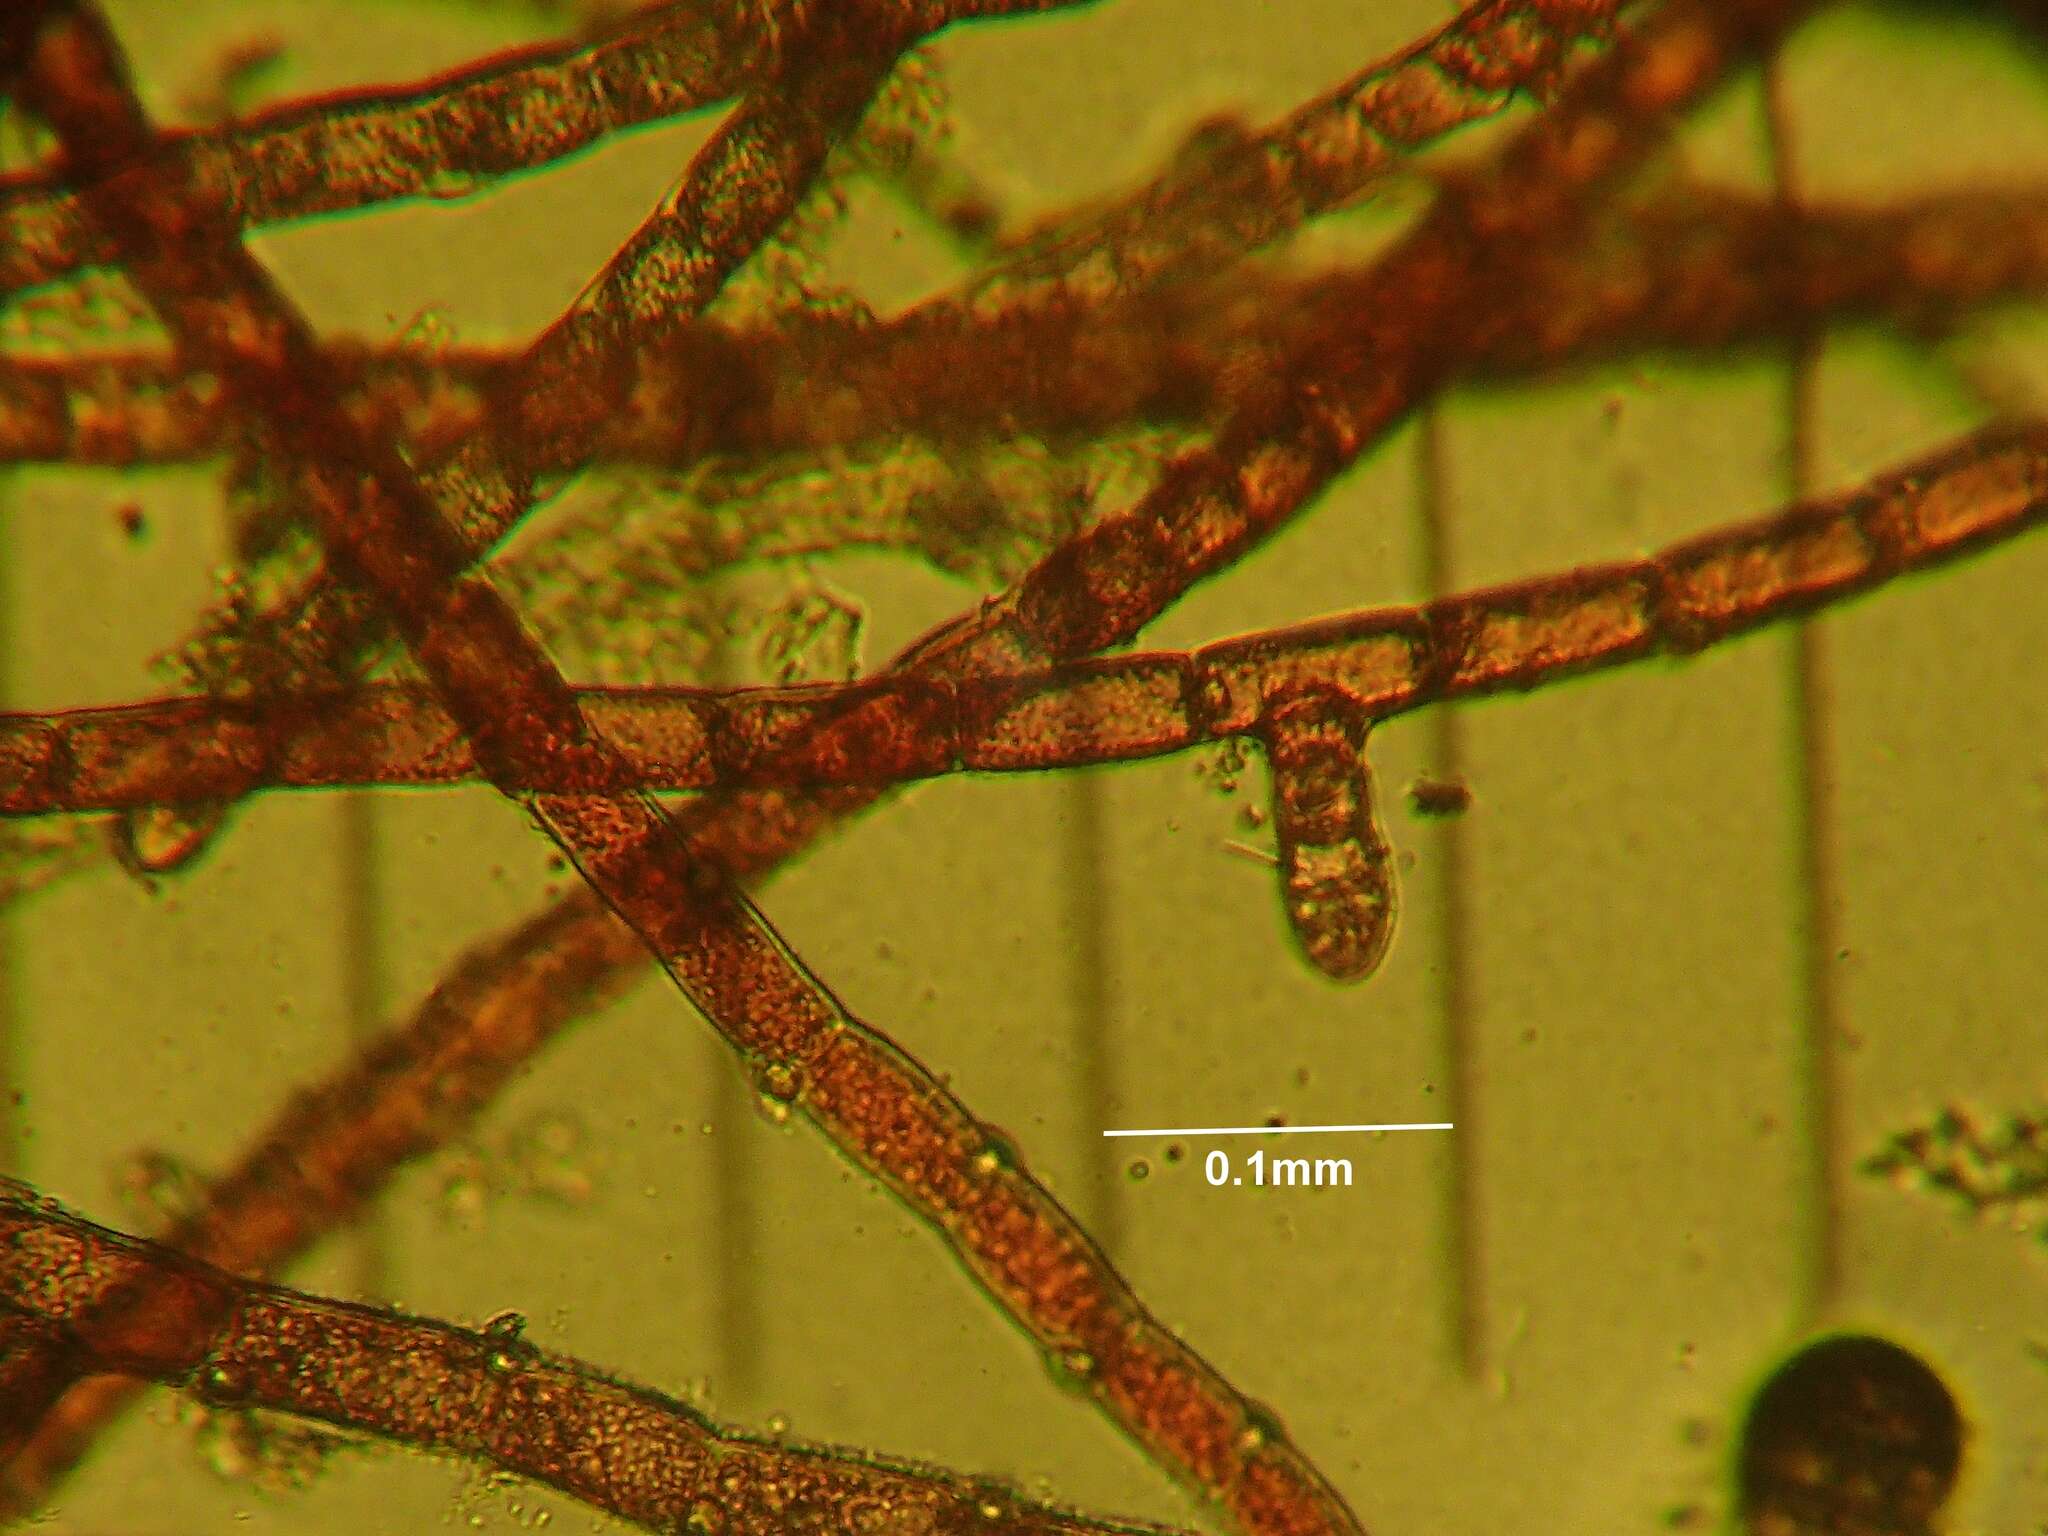 Image of Red algae